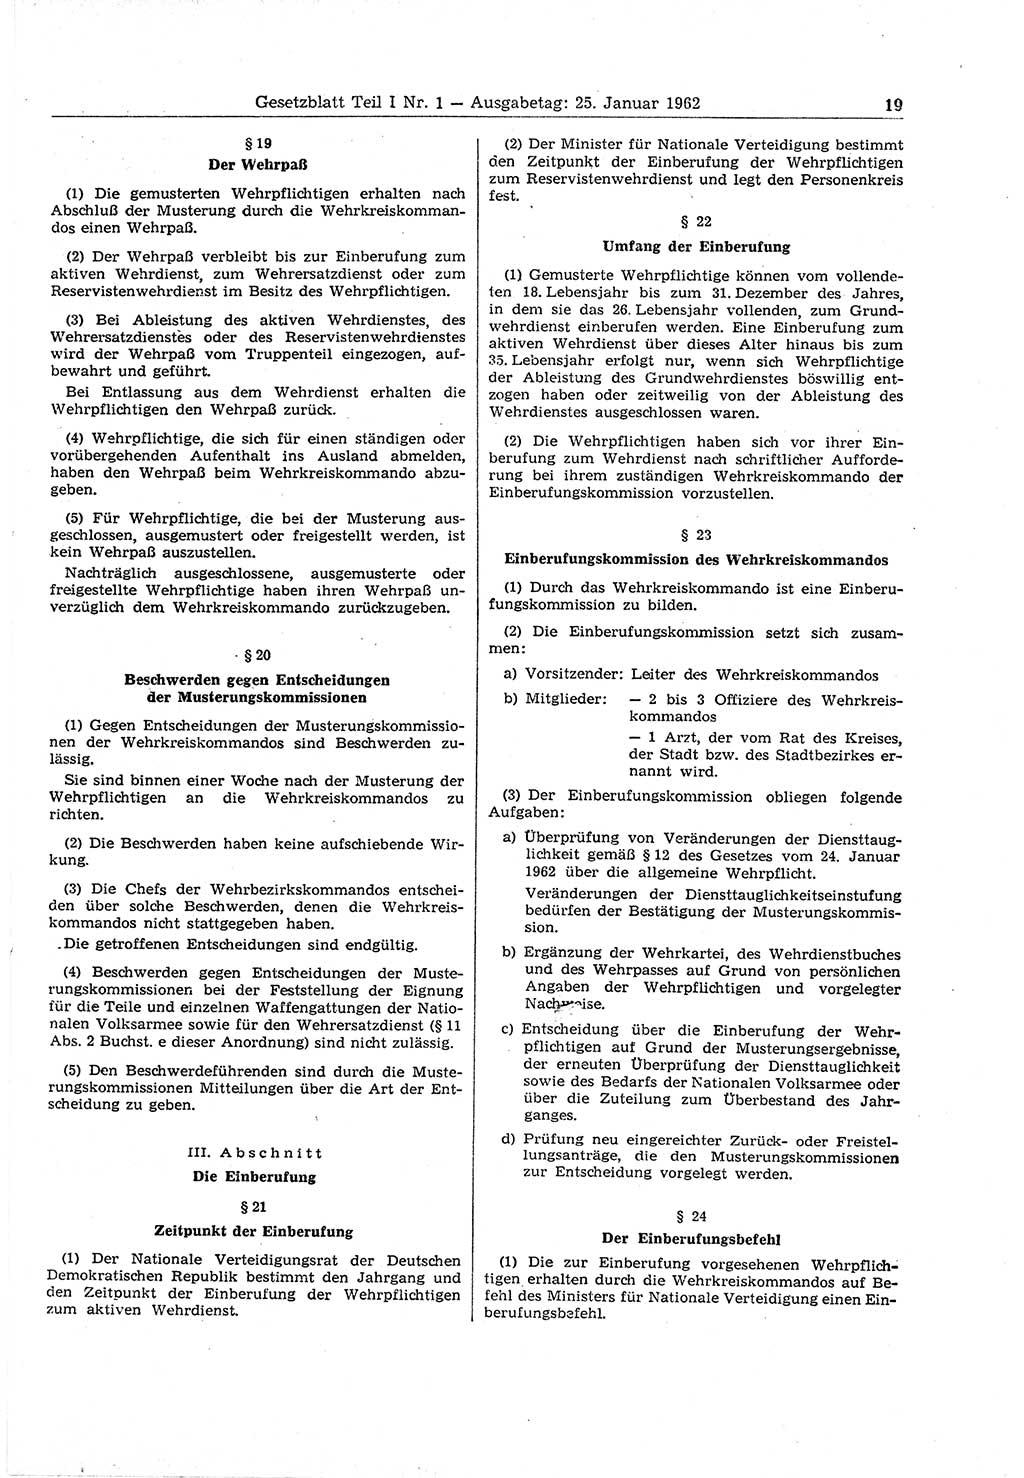 Gesetzblatt (GBl.) der Deutschen Demokratischen Republik (DDR) Teil Ⅰ 1962, Seite 19 (GBl. DDR Ⅰ 1962, S. 19)